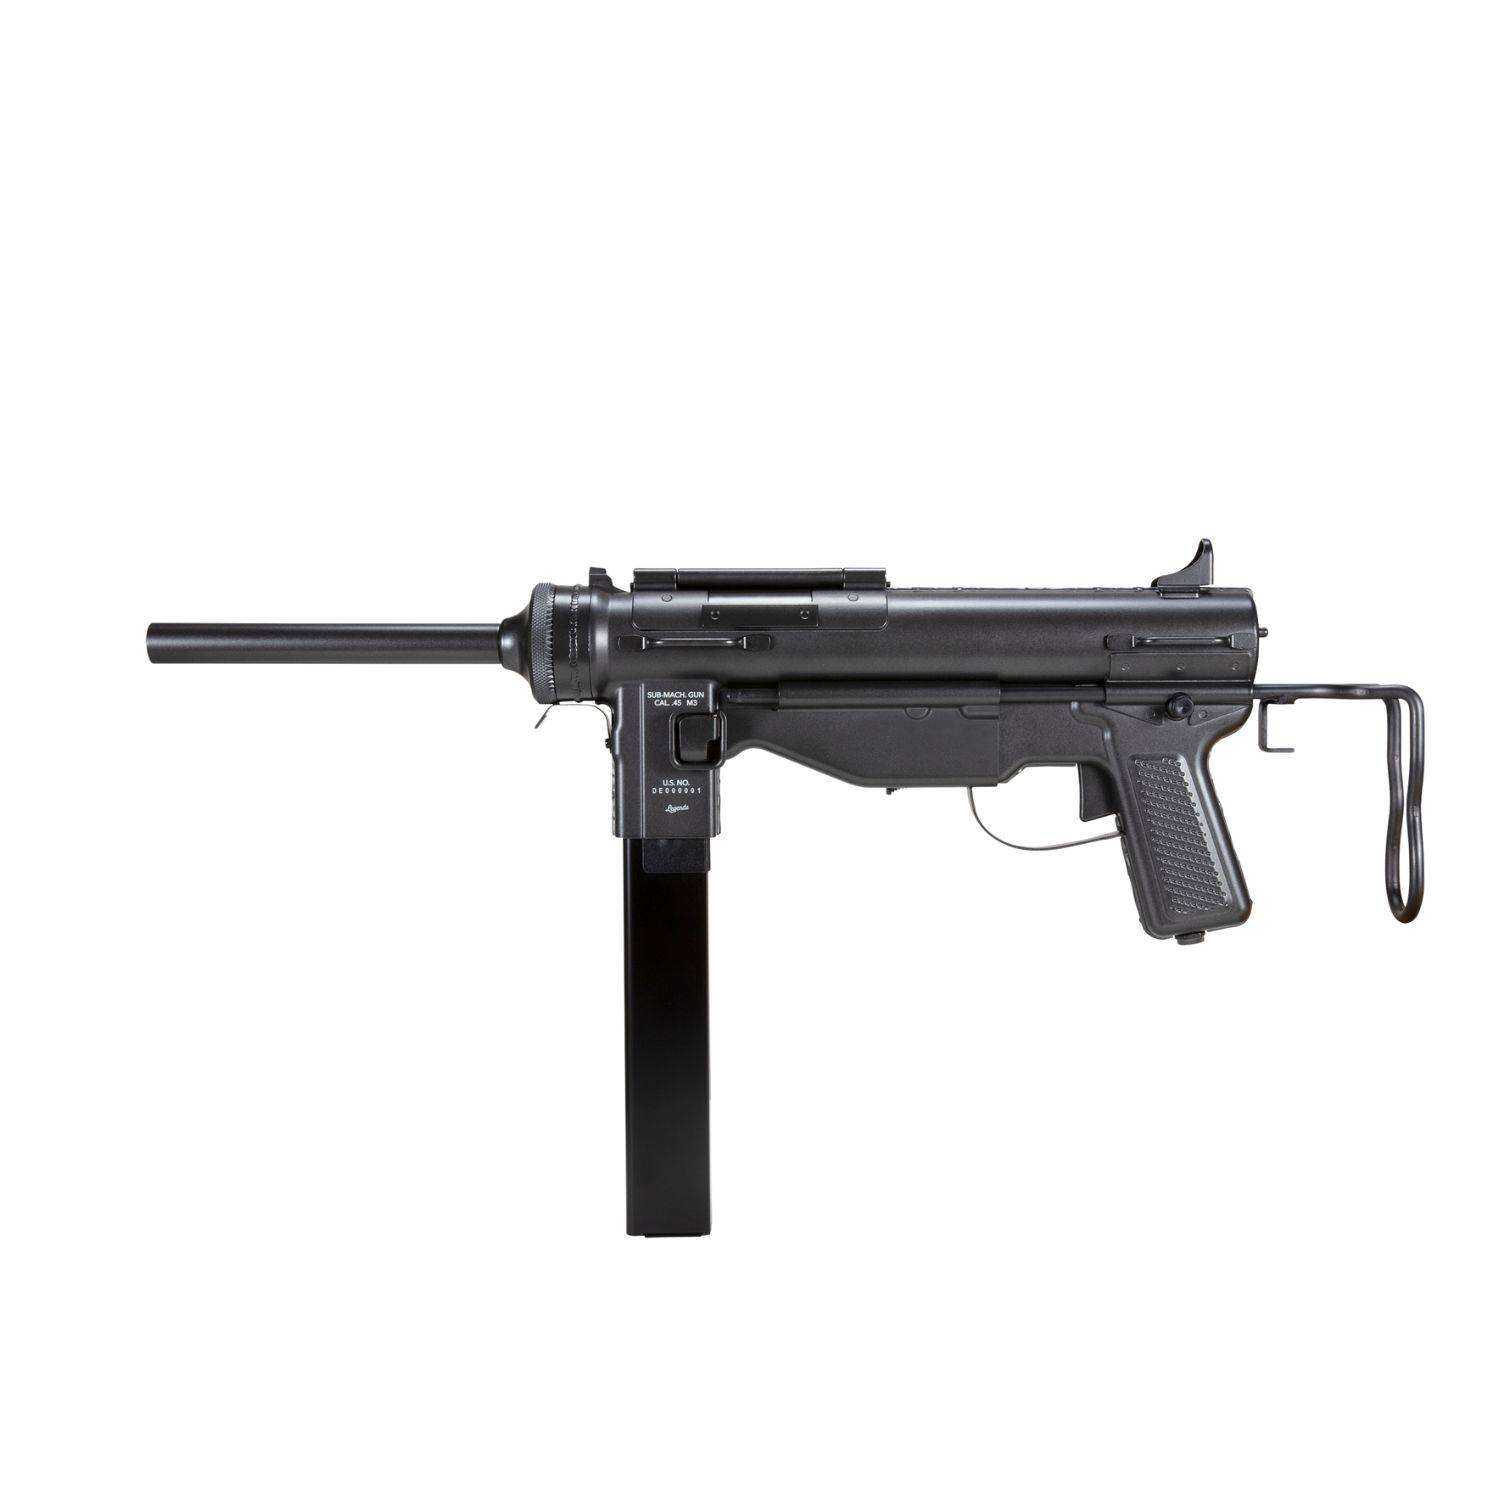 Rifle Hellboy M4 De Balines y CO2